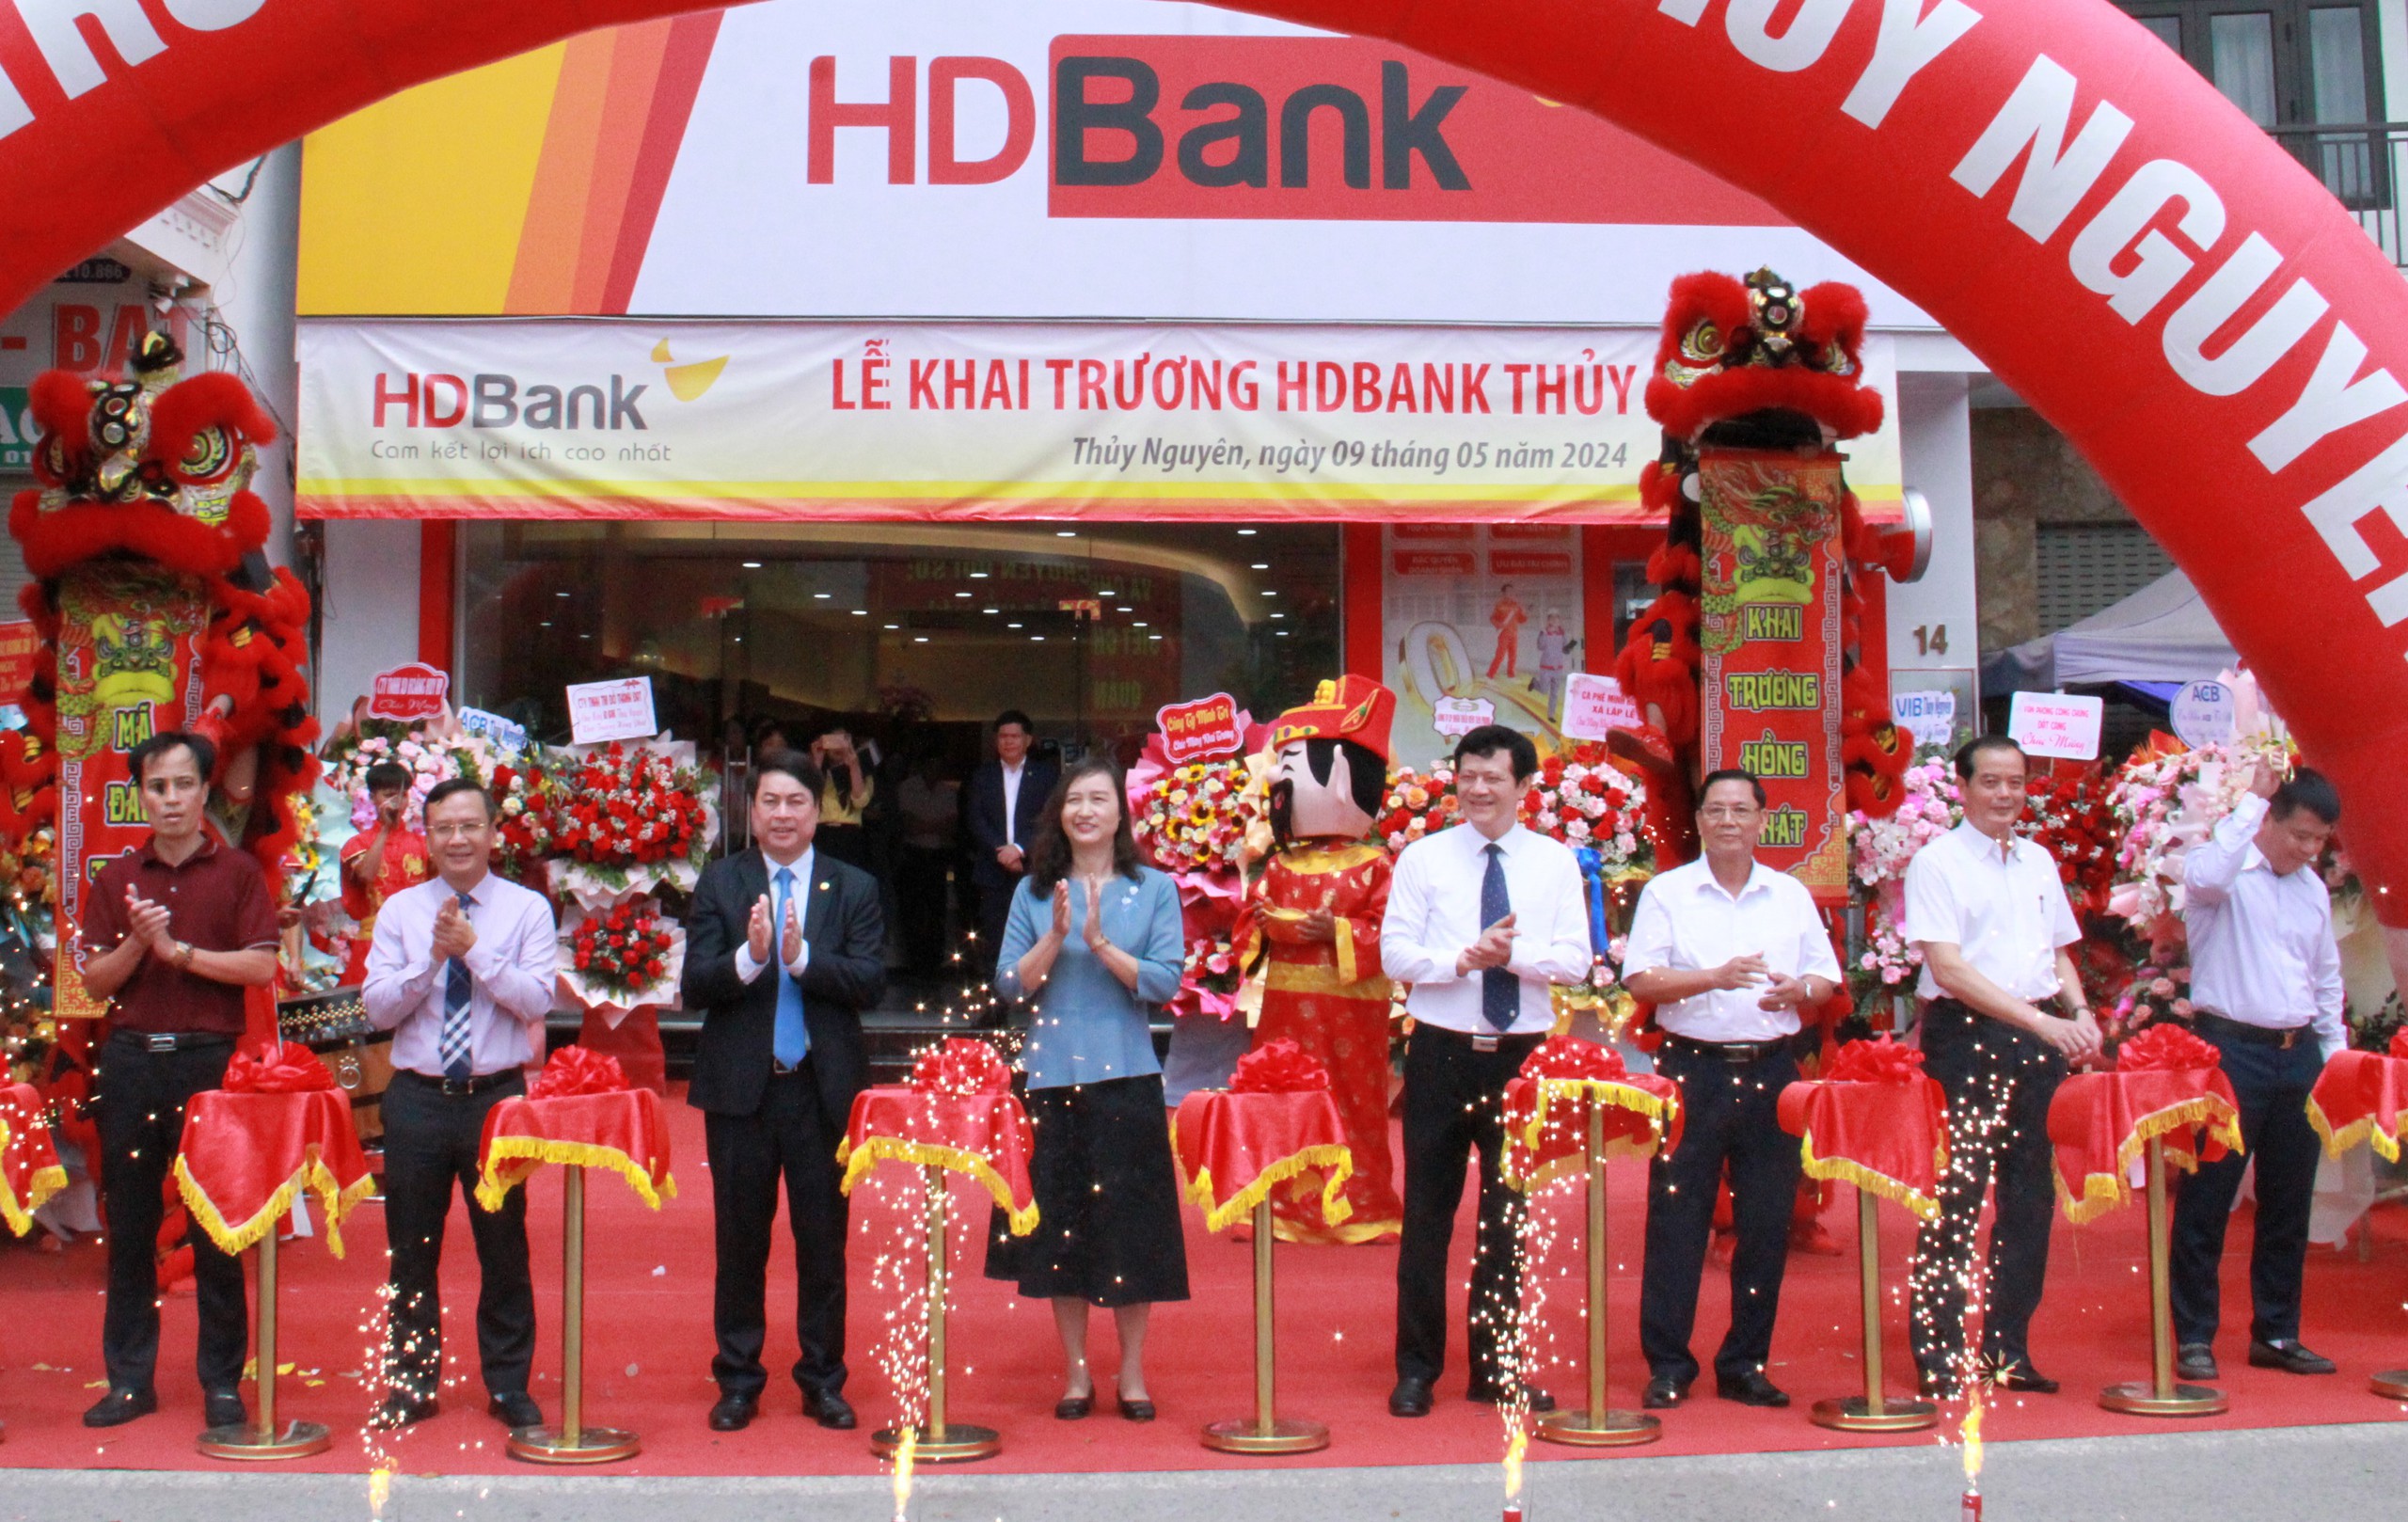 Mở thêm chi nhánh tại Thủy Nguyên, HDBank góp động lực cùng mục tiêu lớn của Hải Phòng- Ảnh 2.